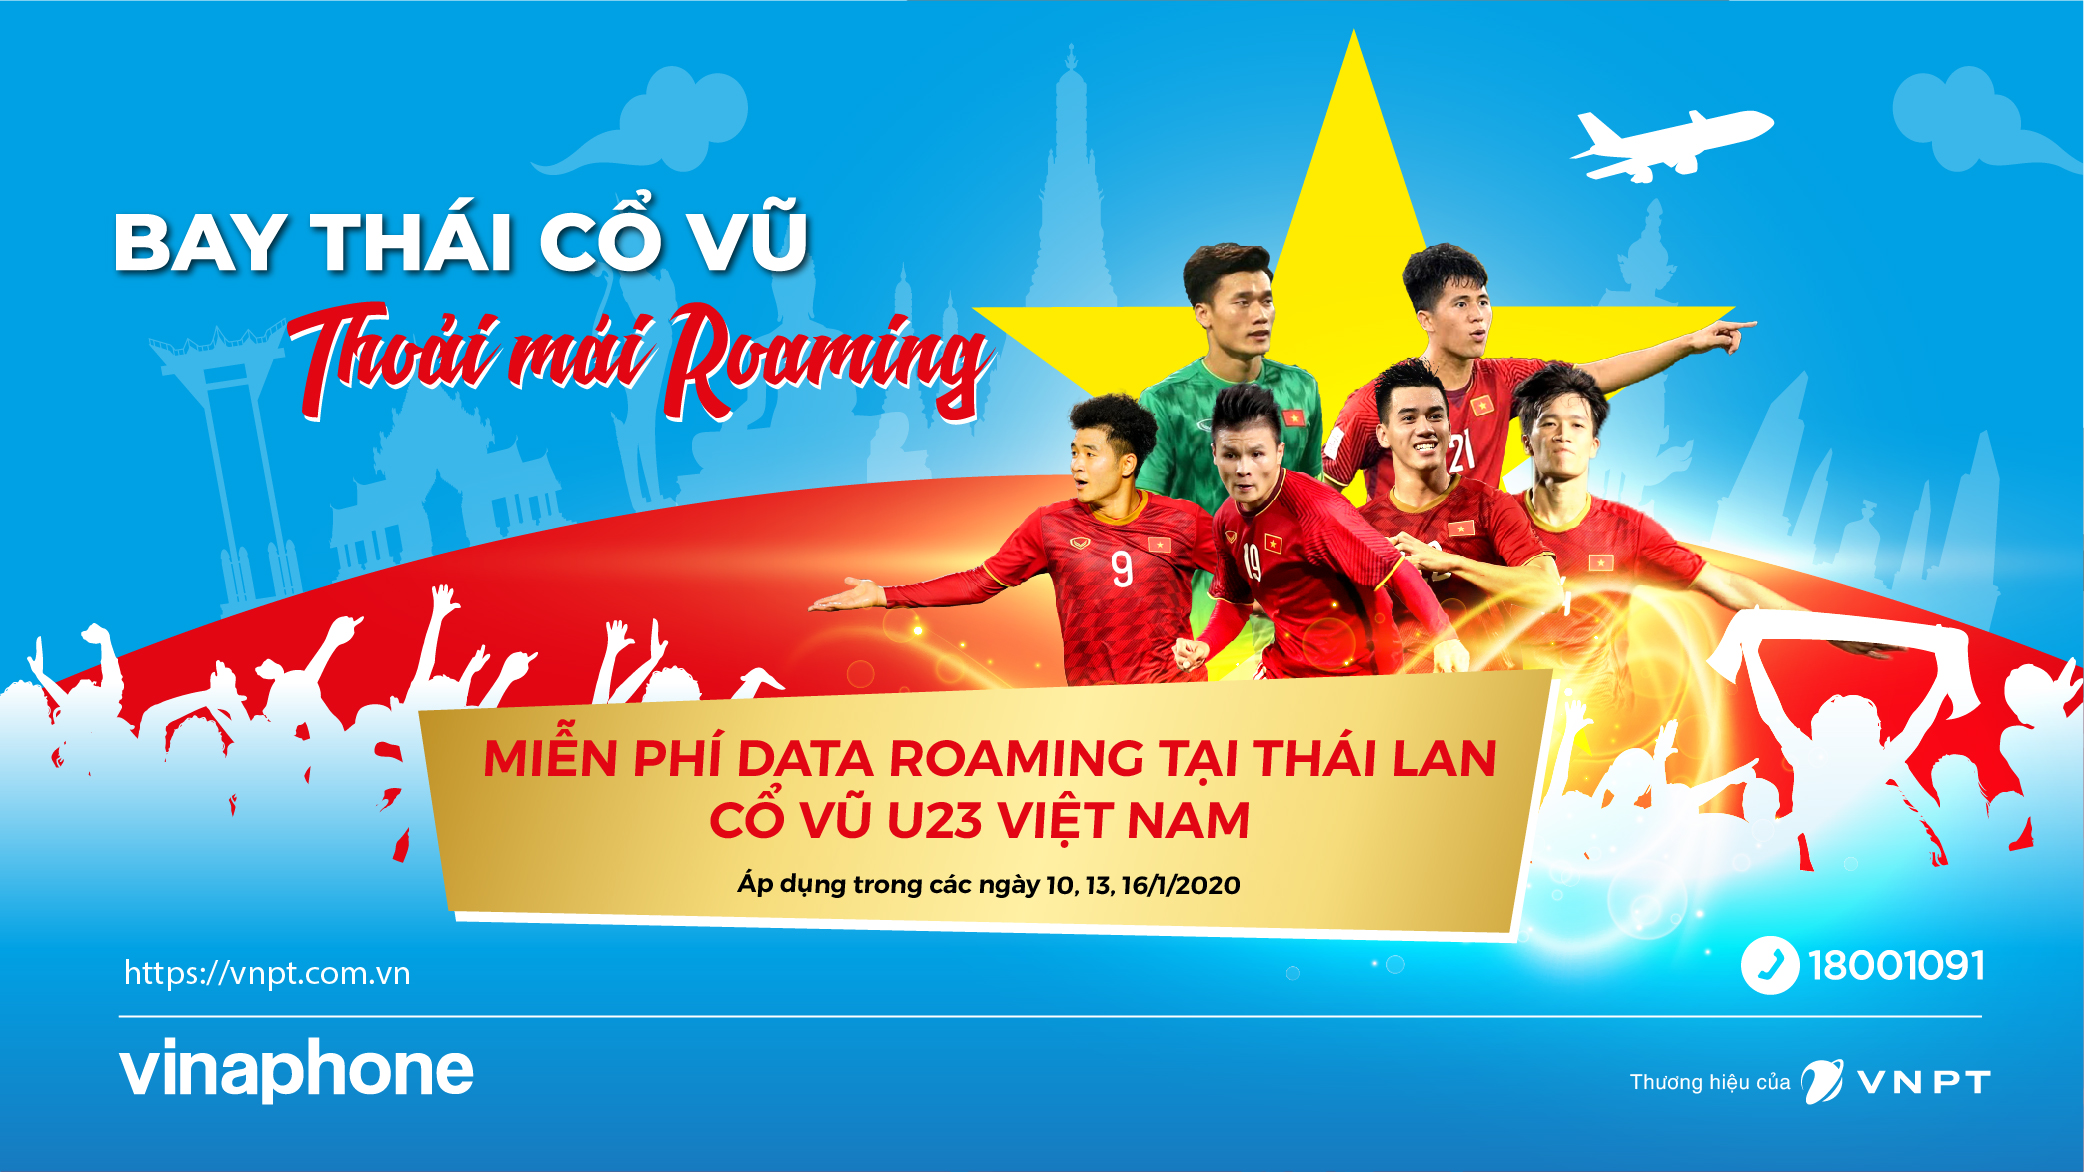 Tới Thái Lan cổ vũ VCK U23, thuê bao VinaPhone được miễn phí hoàn toàn Data Roaming